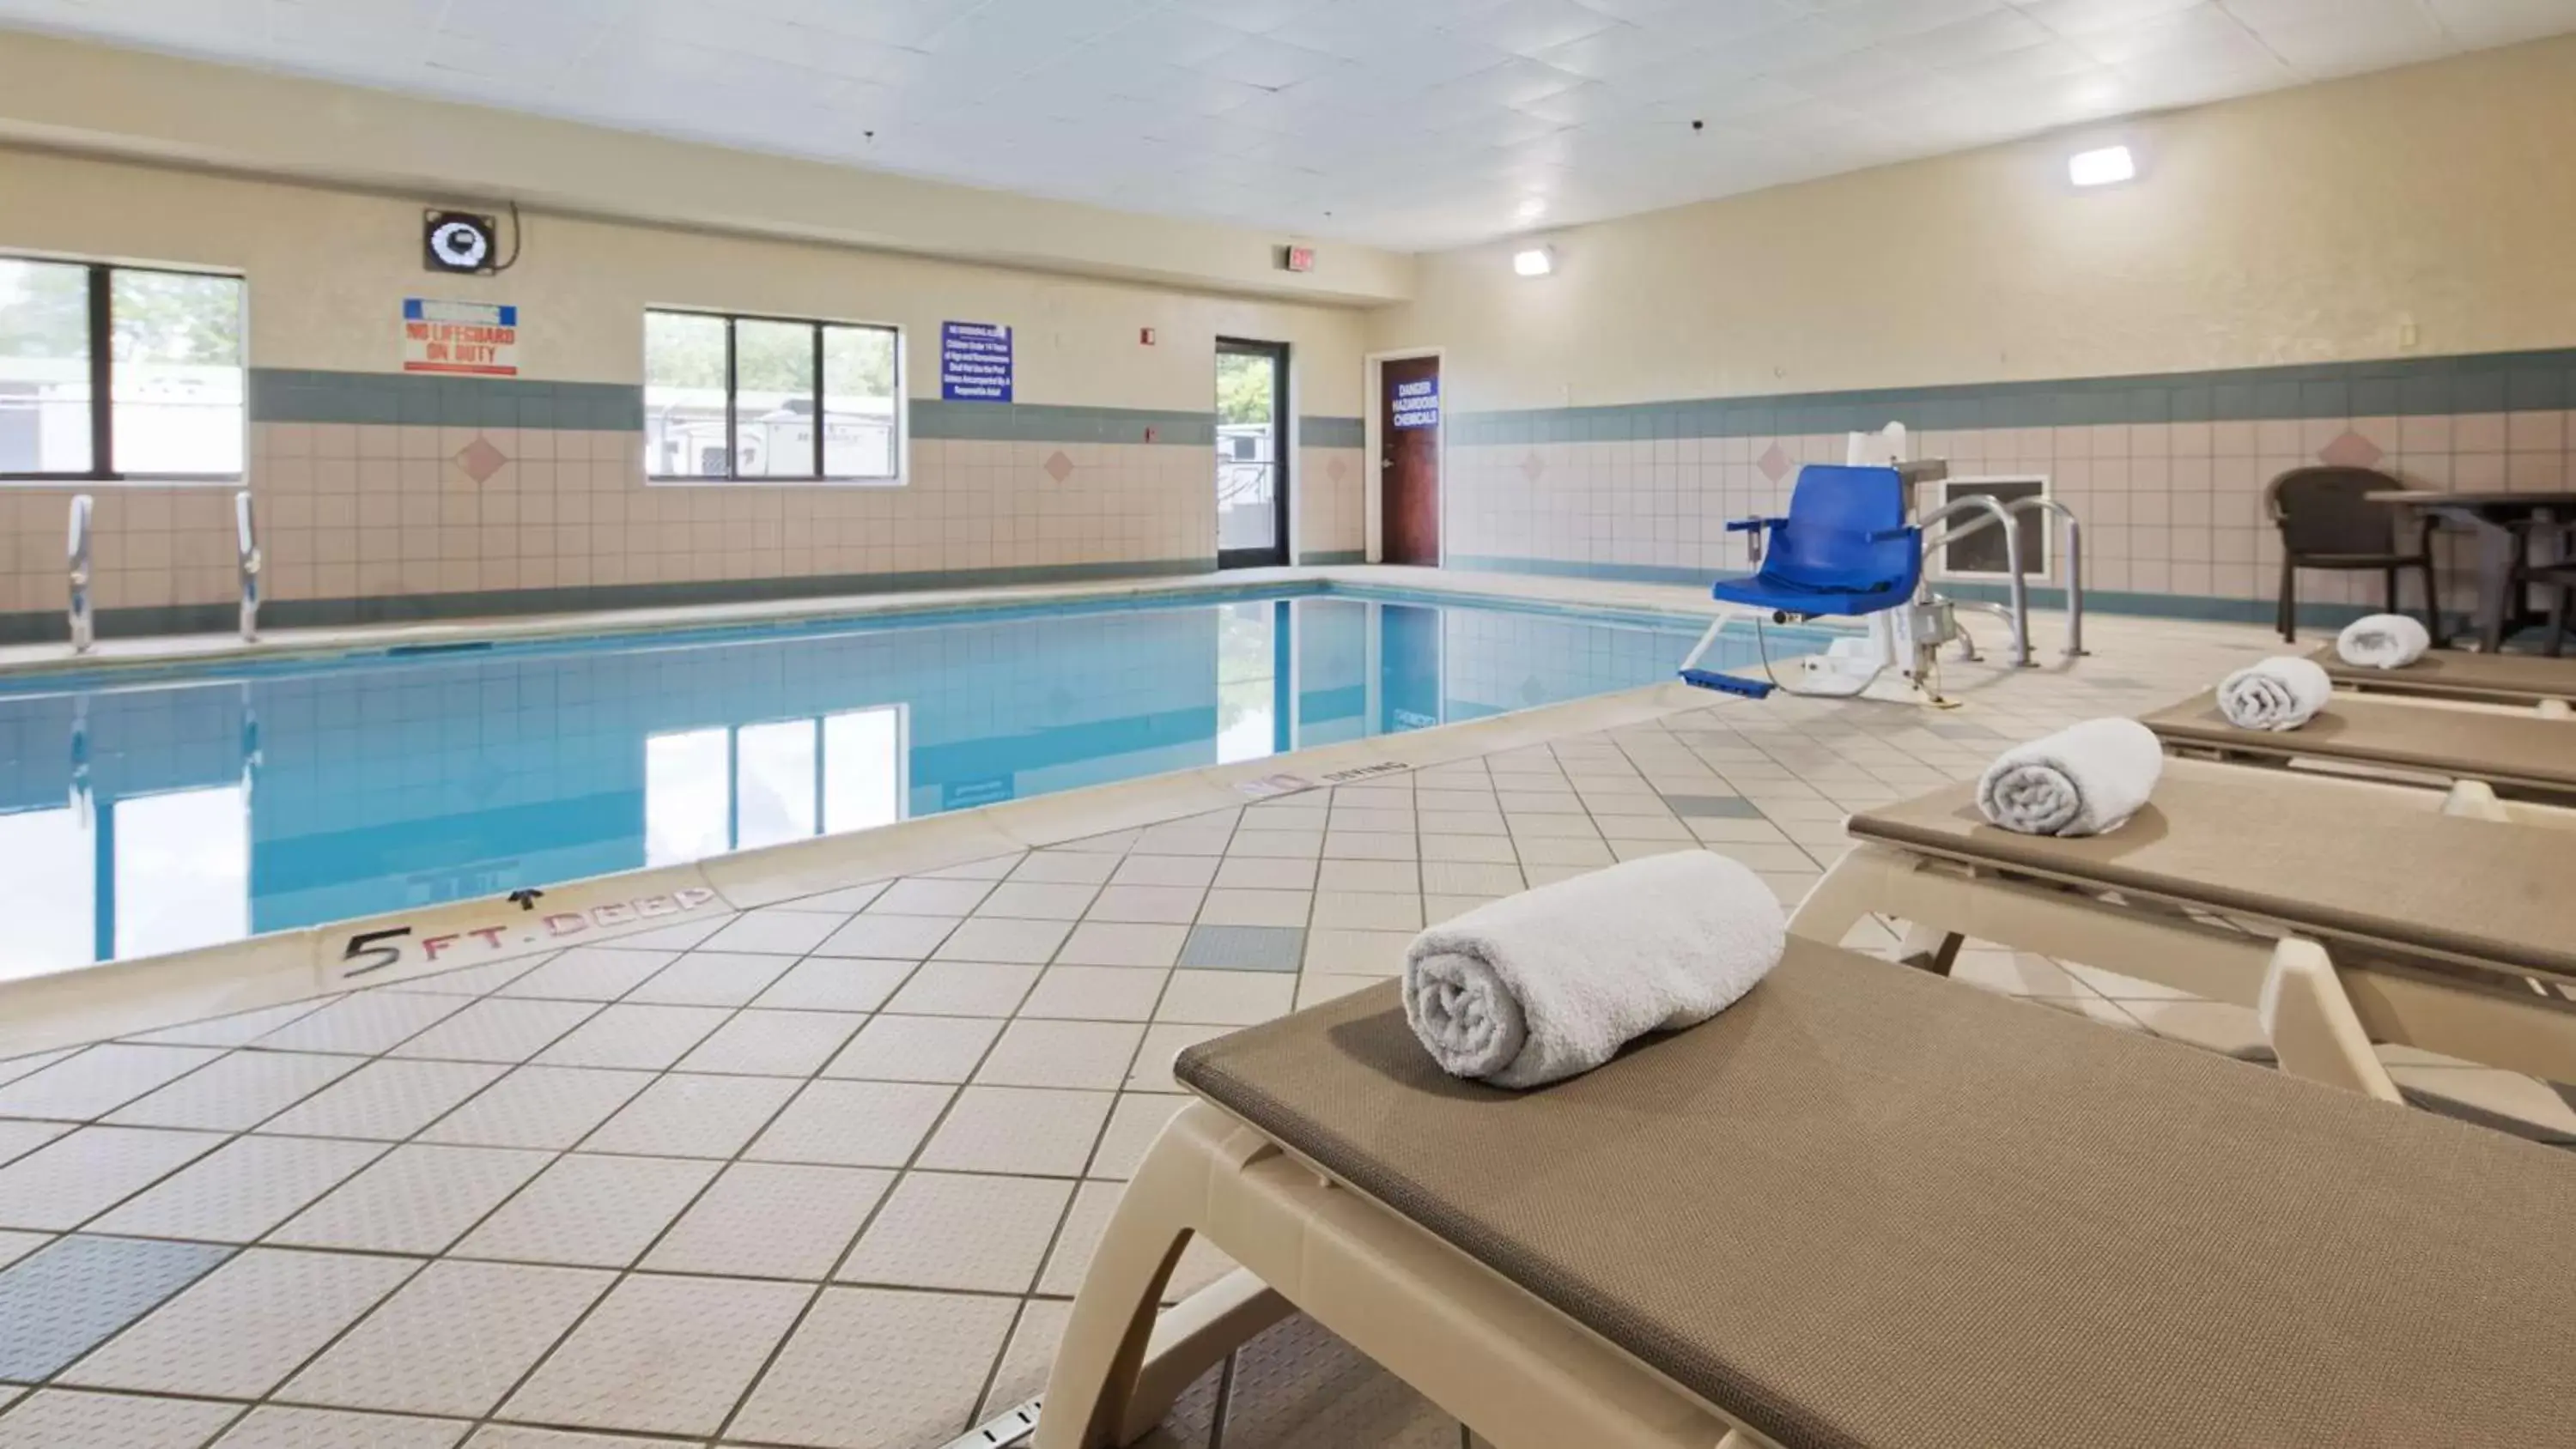 On site, Swimming Pool in Best Western Elkhart Inn & Suites